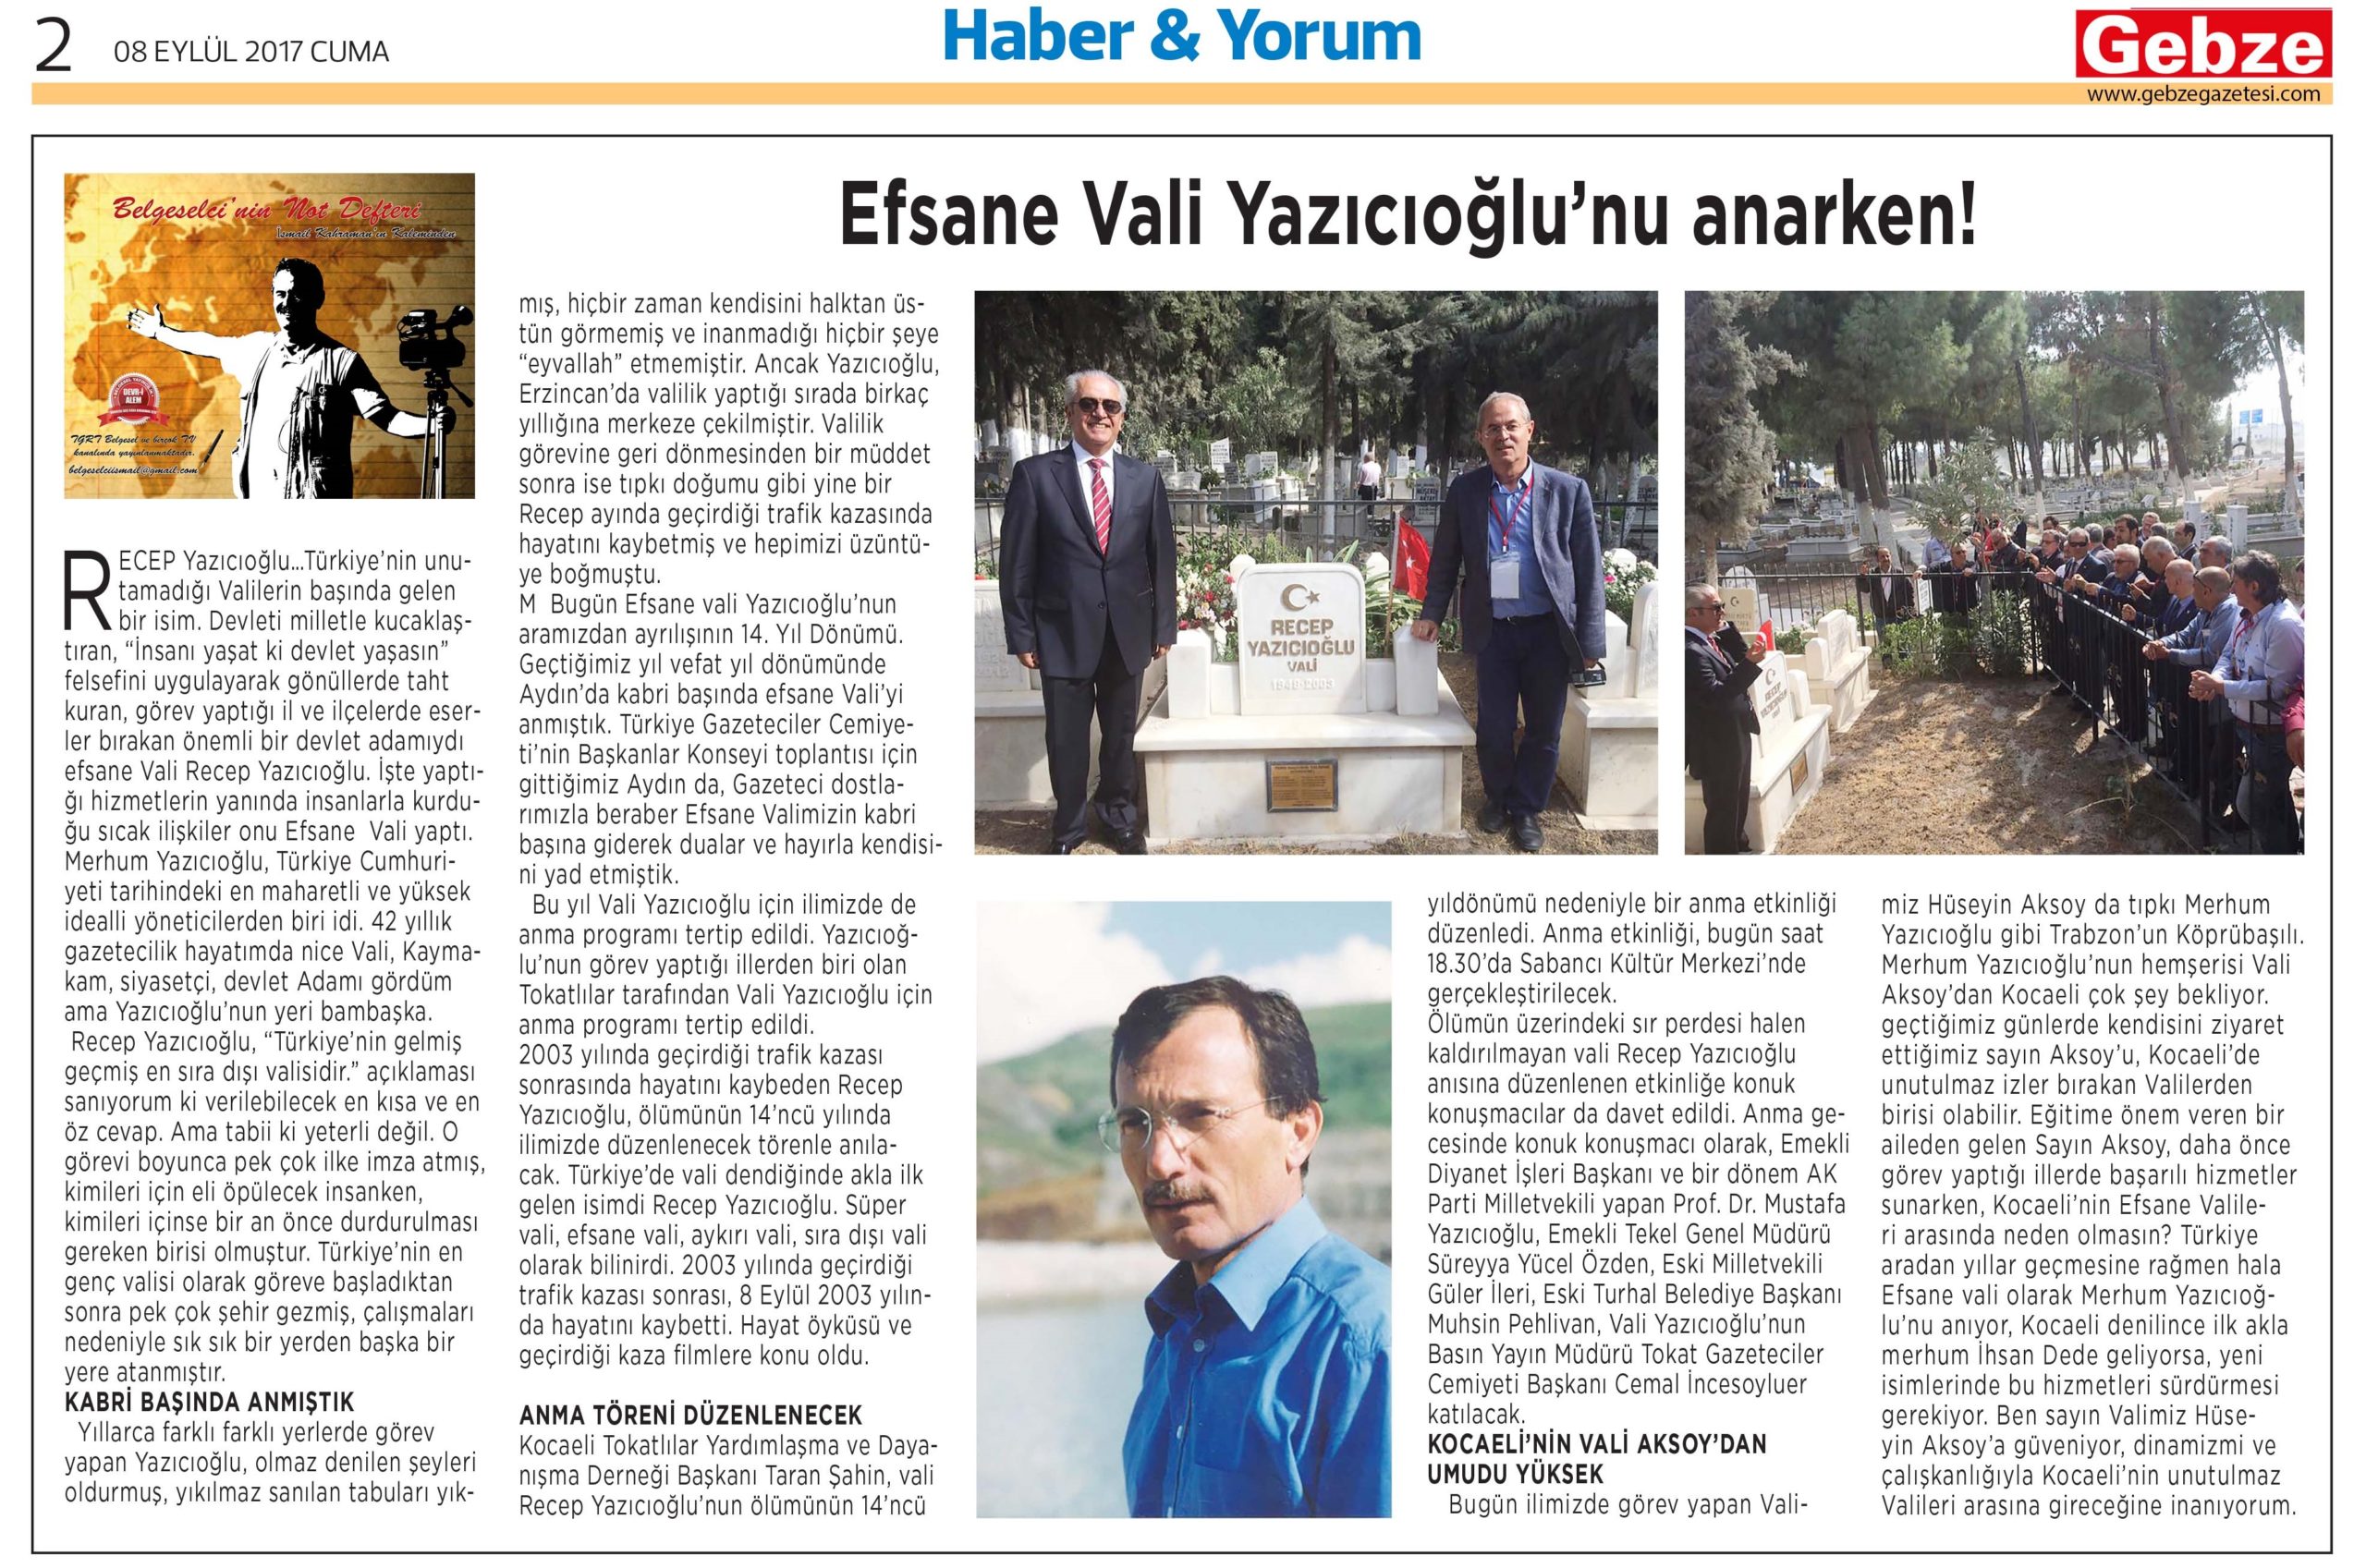 Efsane Vali Yazıcıoğlu’nu anarken! - Gebze Gazetesi - İsmail Kahraman